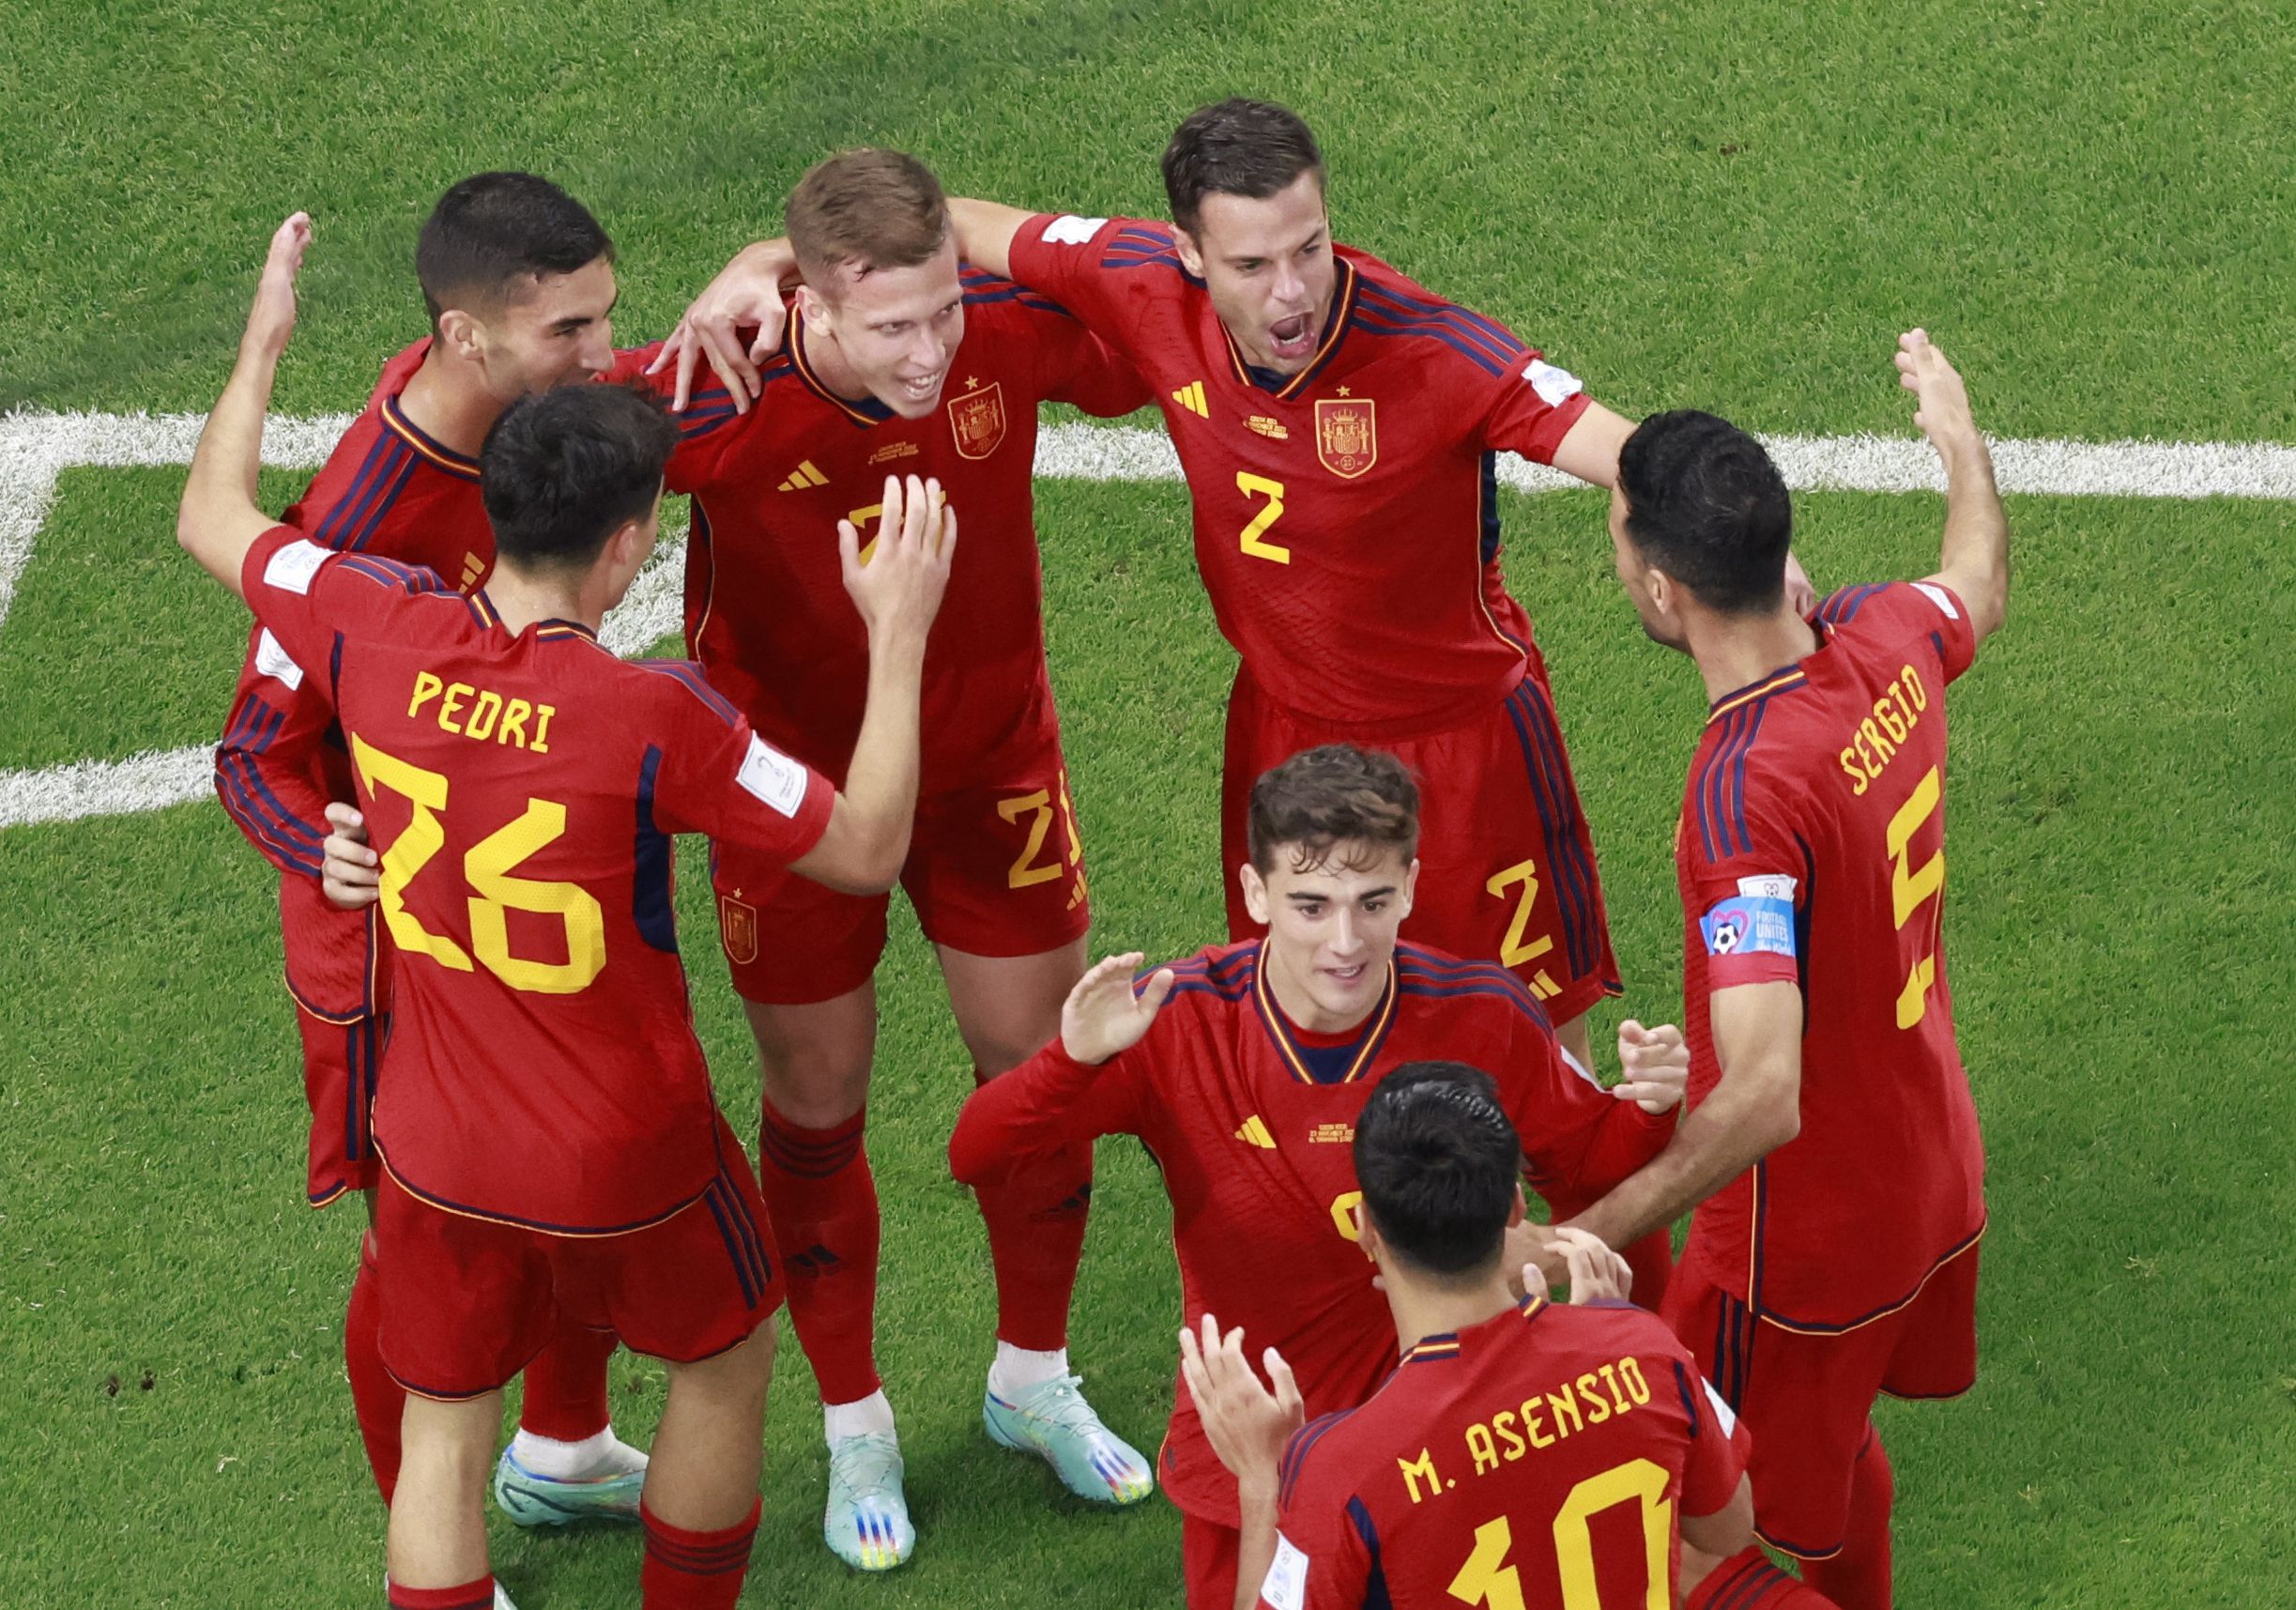 Partido al descanso con España adelante en el marcador por 3-0 sobre Costa Rica. REUTERS/Peter Cziborra